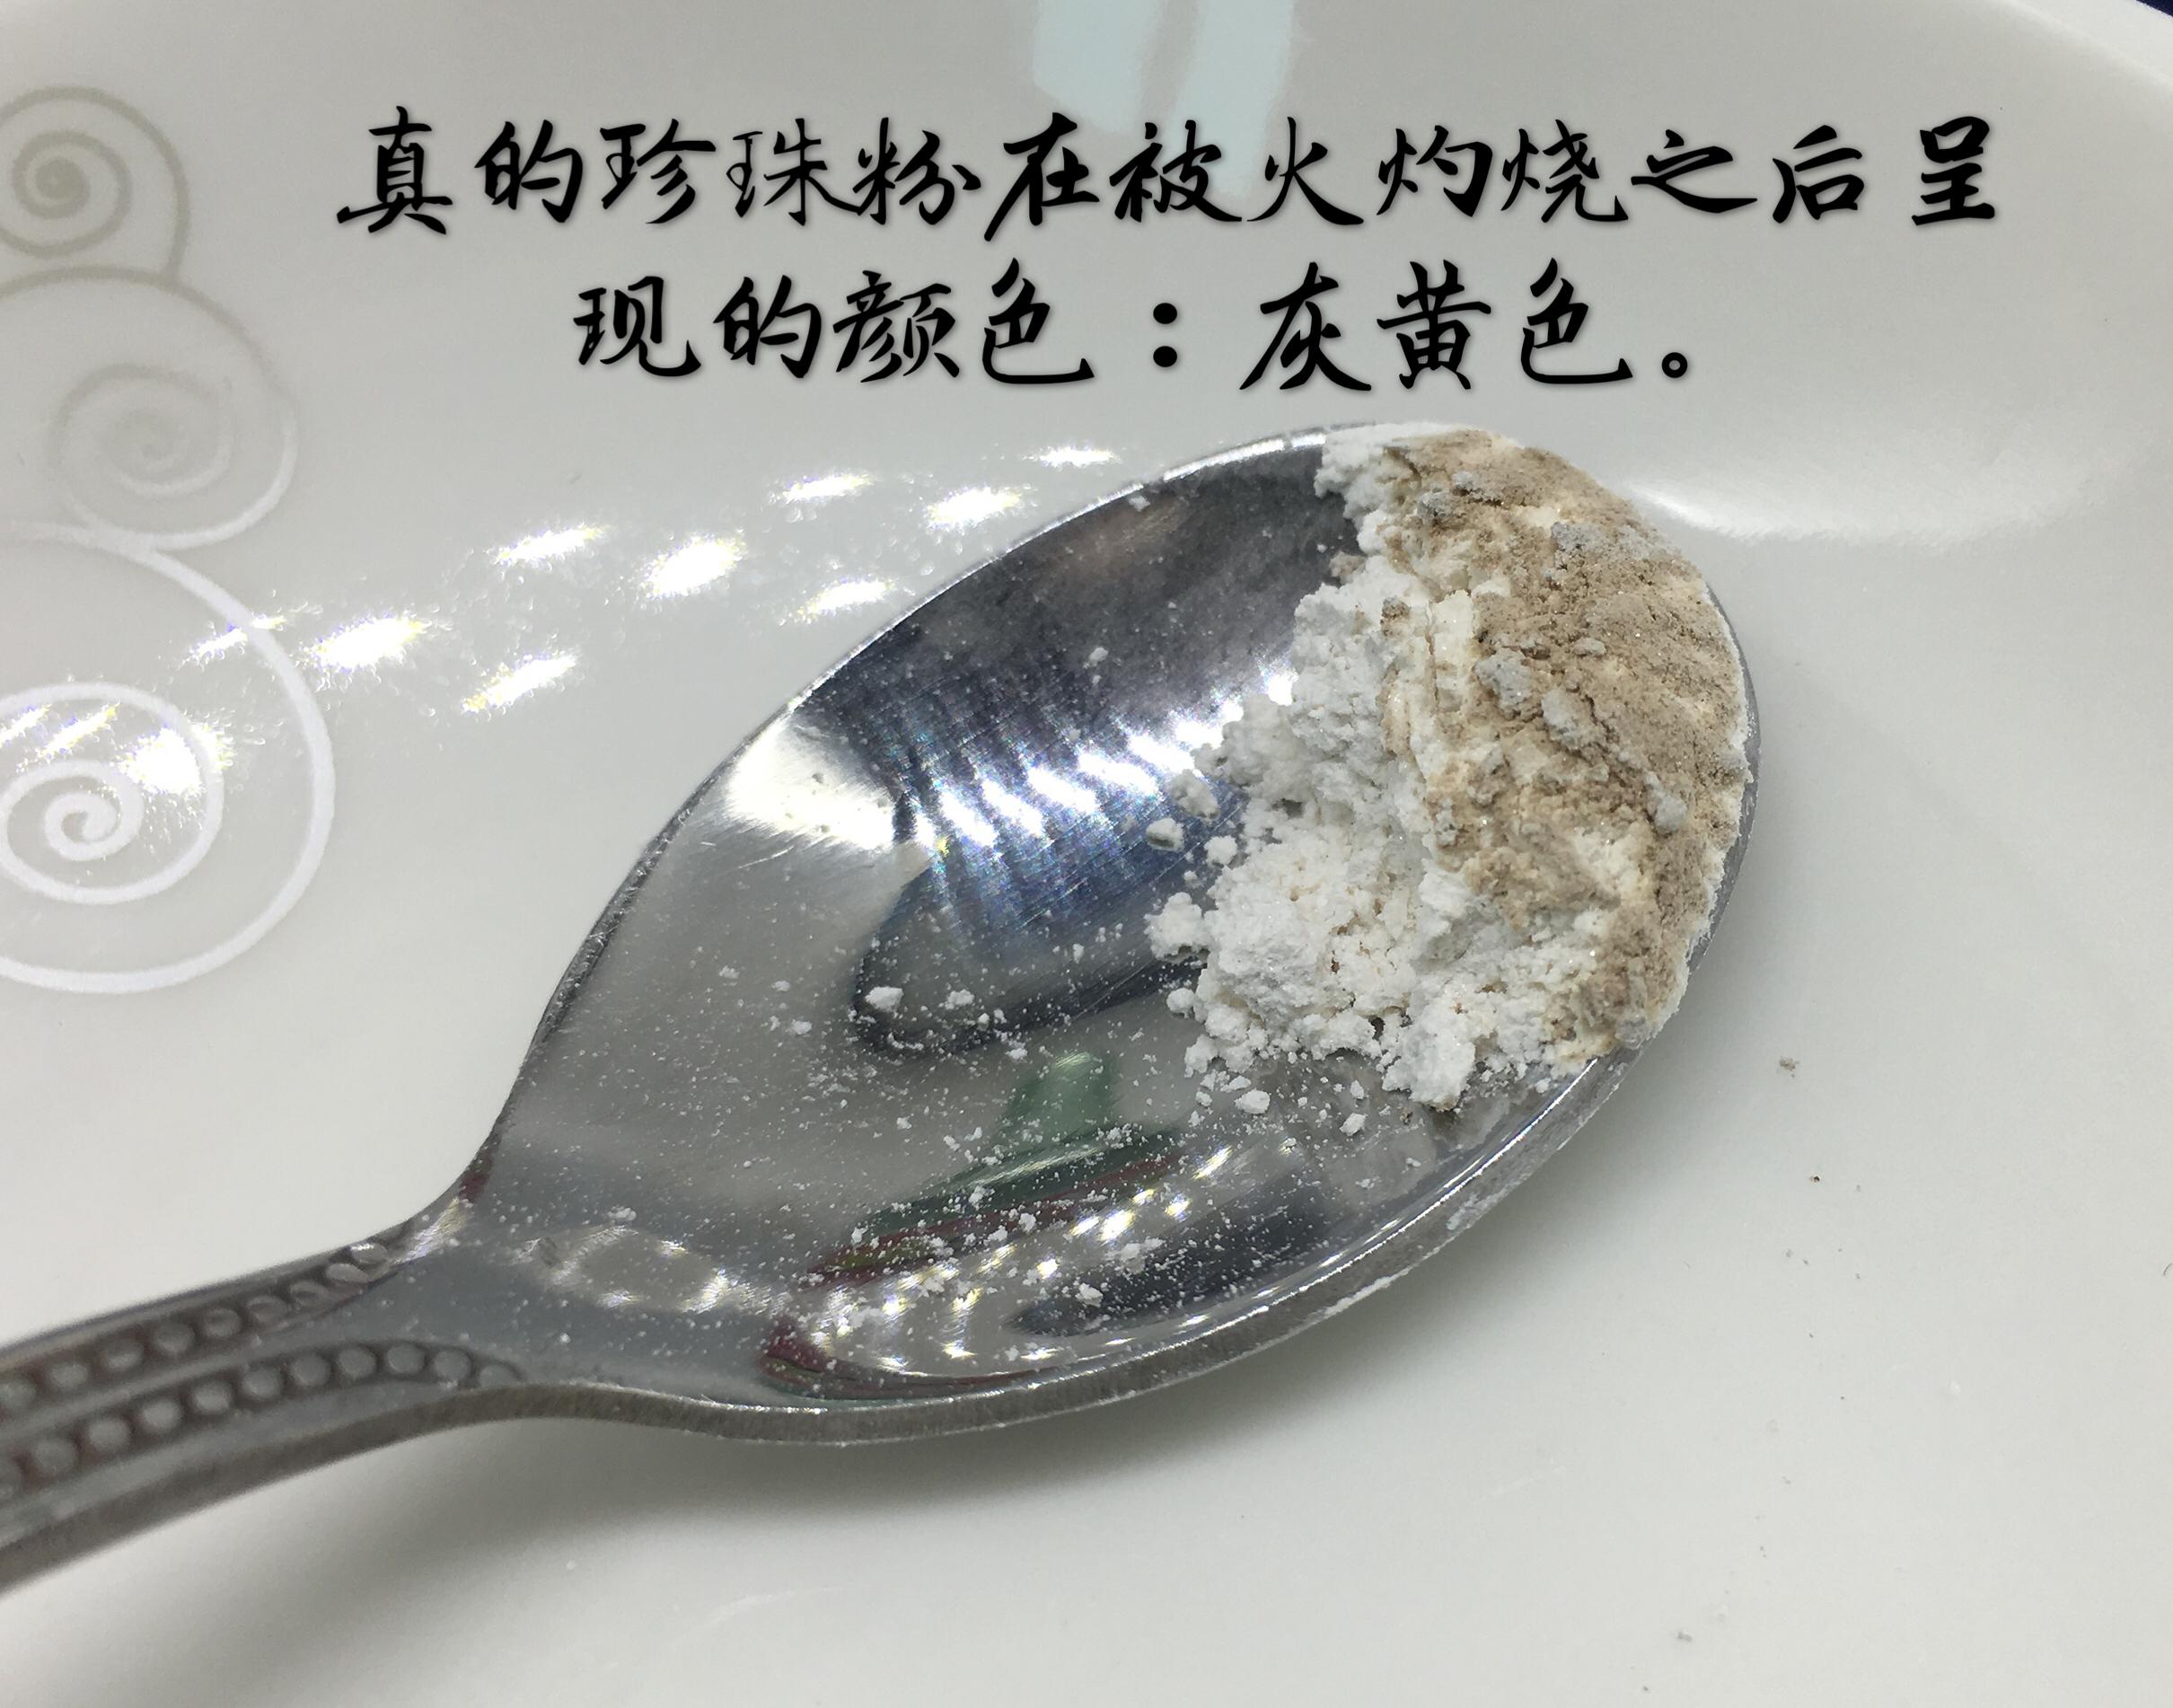 珍珠粉 Pearl Powder(19g+-) - Min Hor Tong Malaysia Gift Hamper, Ginseng,Birdnest, Chinese ...